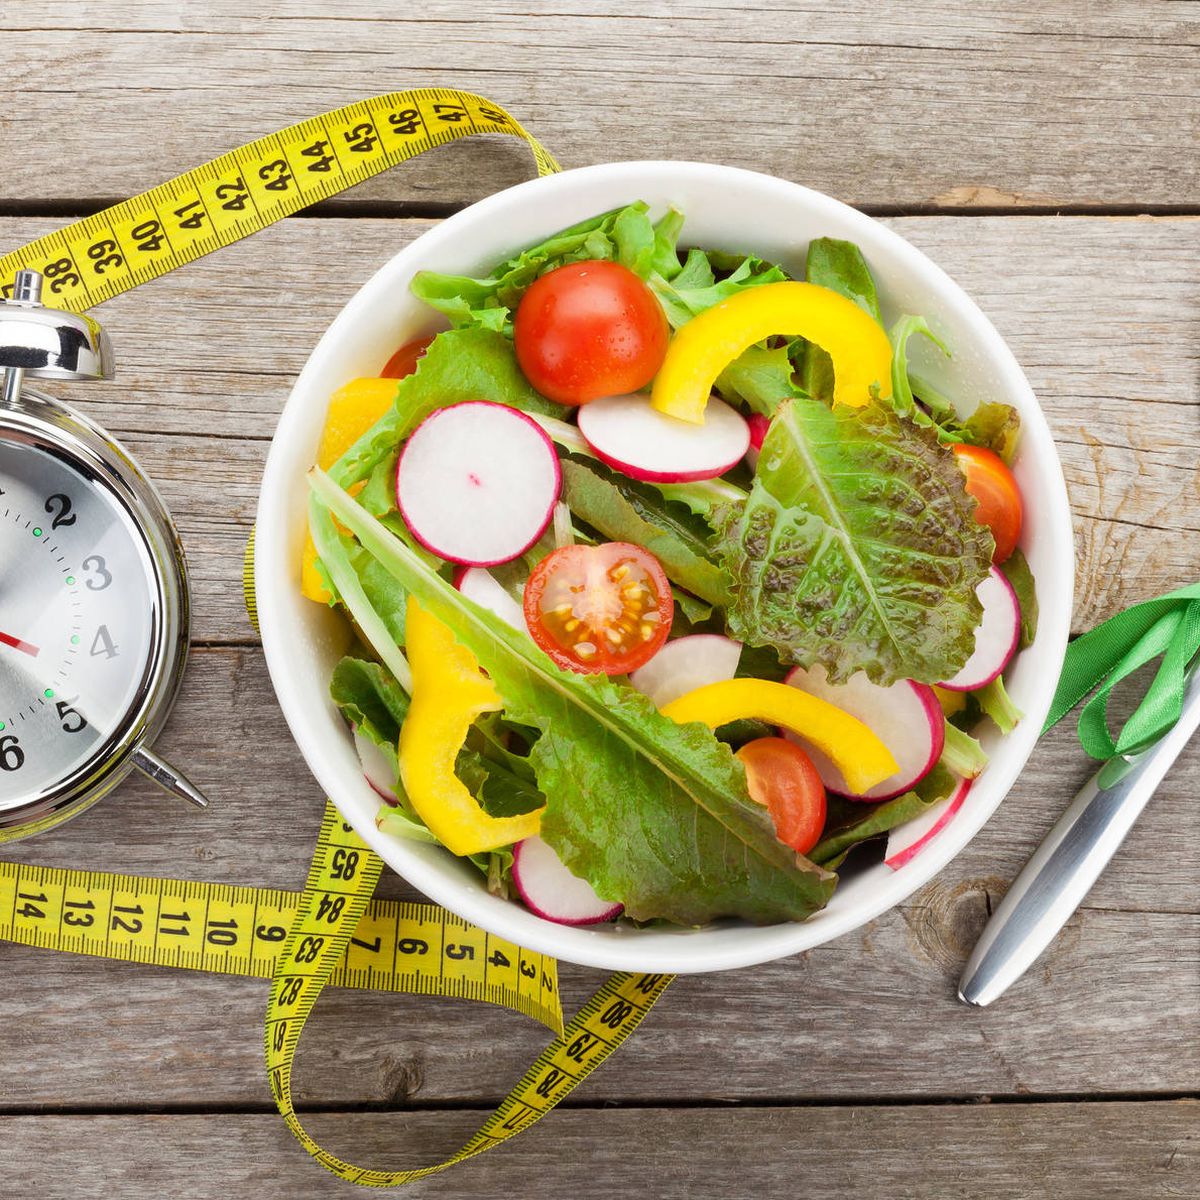 Cómo comer bien para adelgazar - Consejos y trucos para bajar de peso